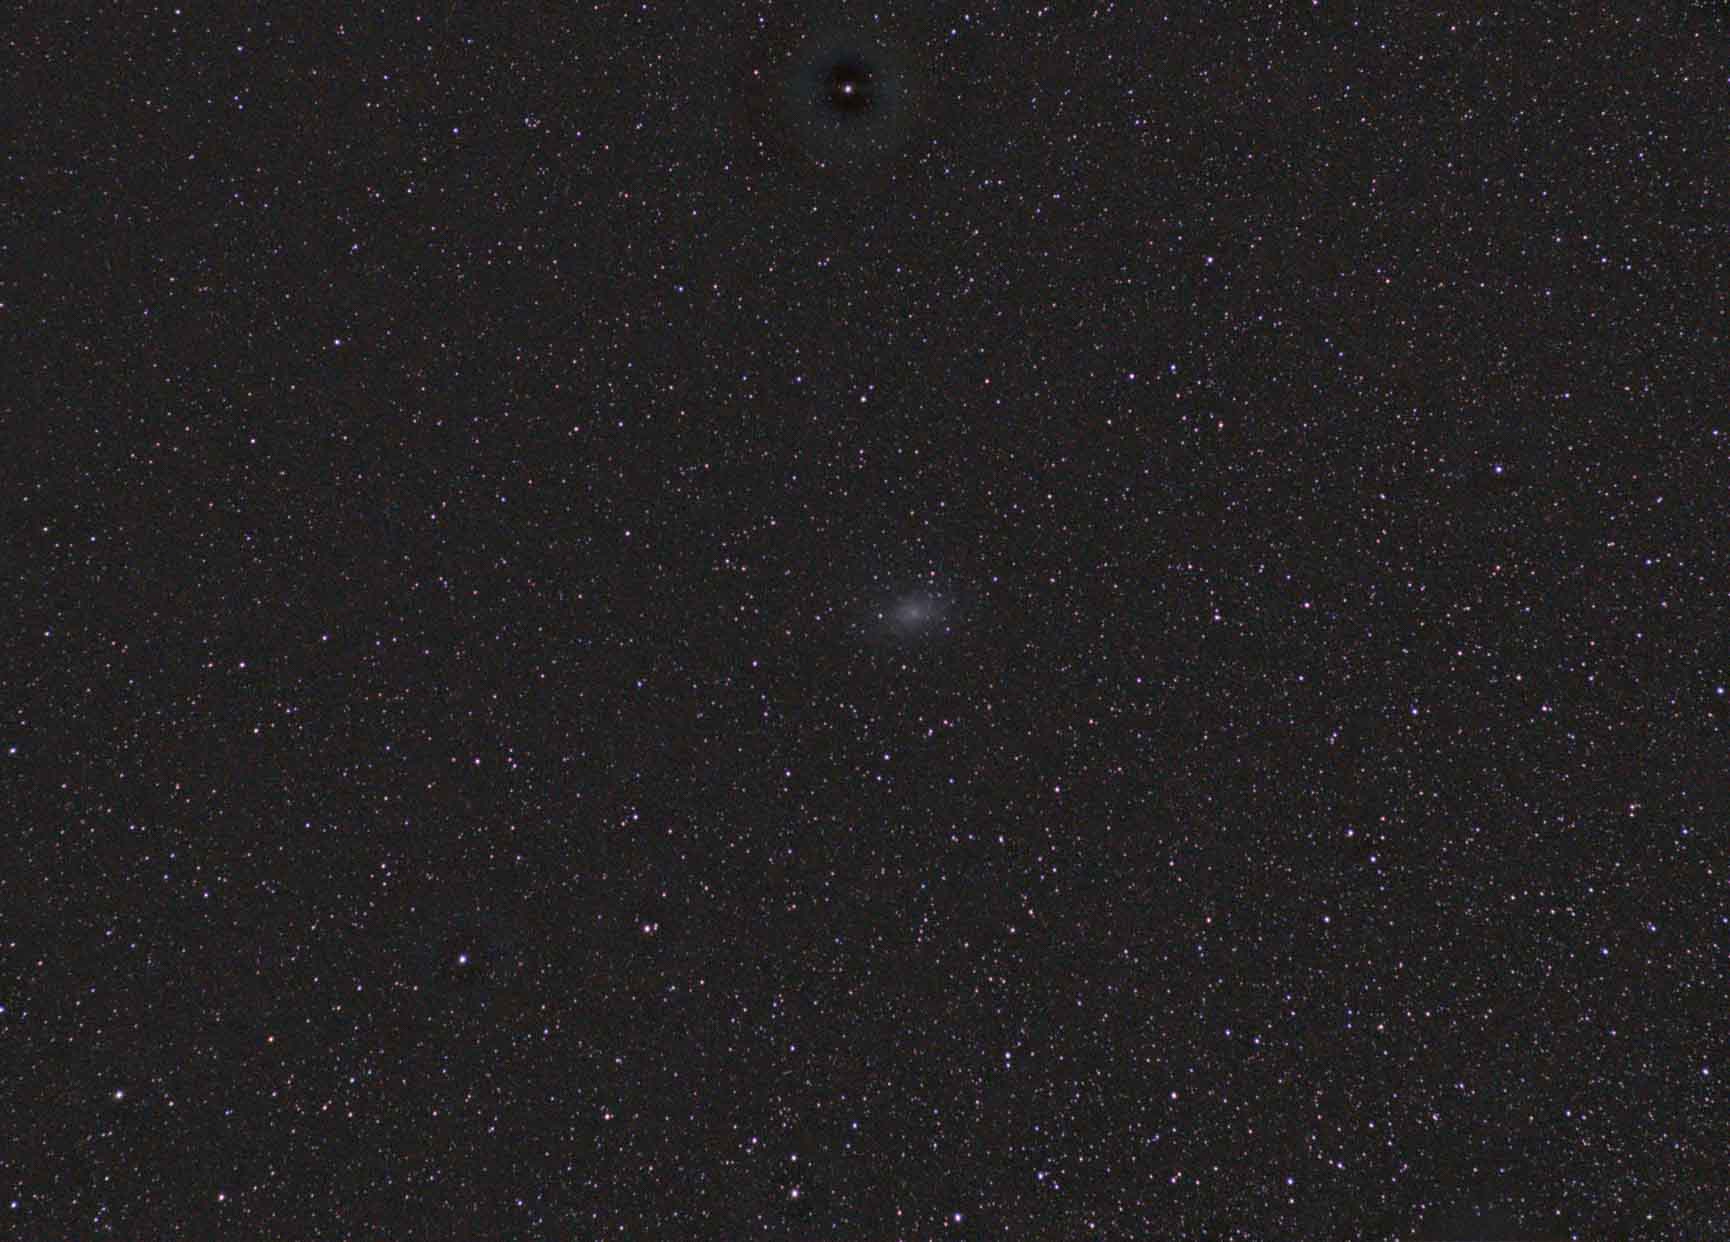 20200127-20200128 Messier 33, or Triangulum Galaxy